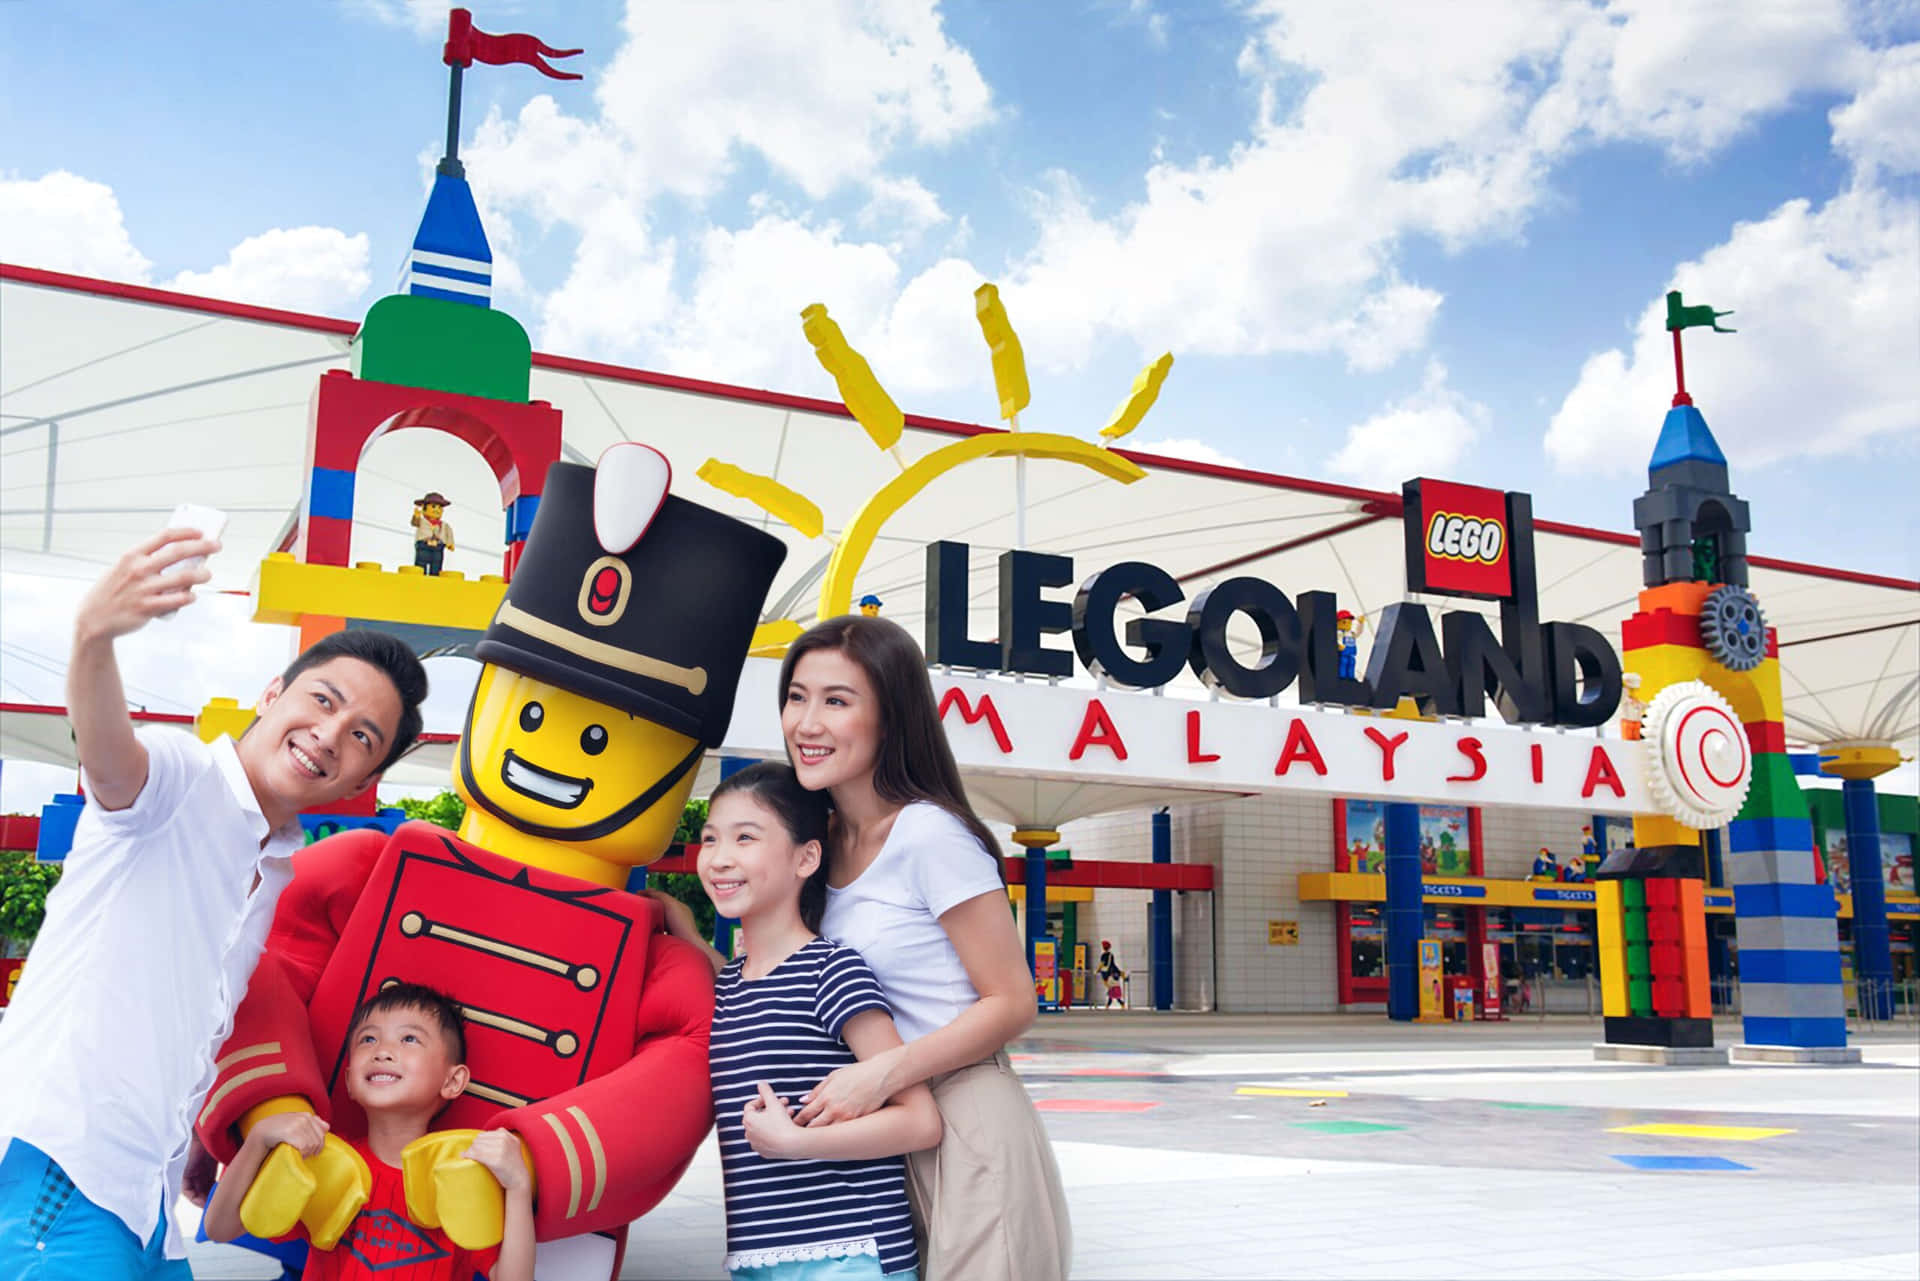 Legolandmalaysia - En Familj Poserar För En Fotografering